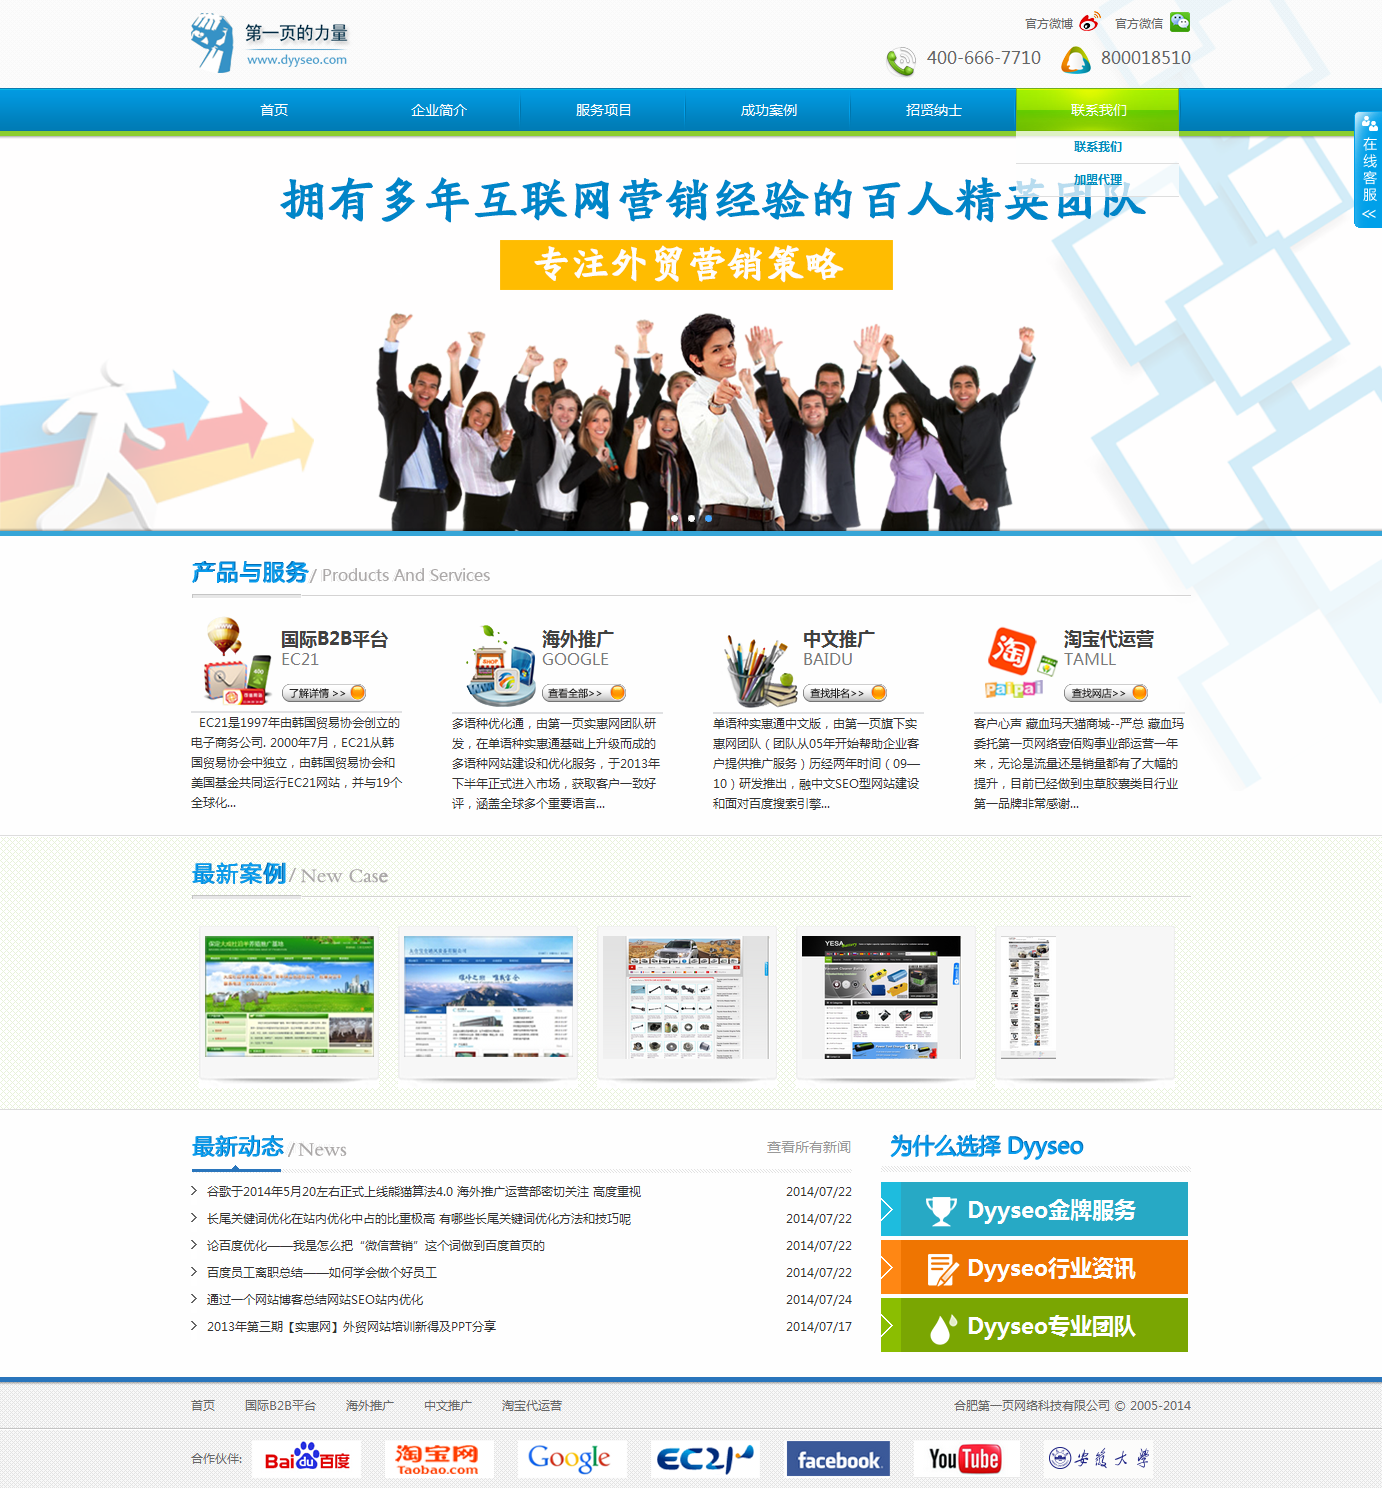 热烈祝贺第一页网络官网于2014年7月底正式改版上线